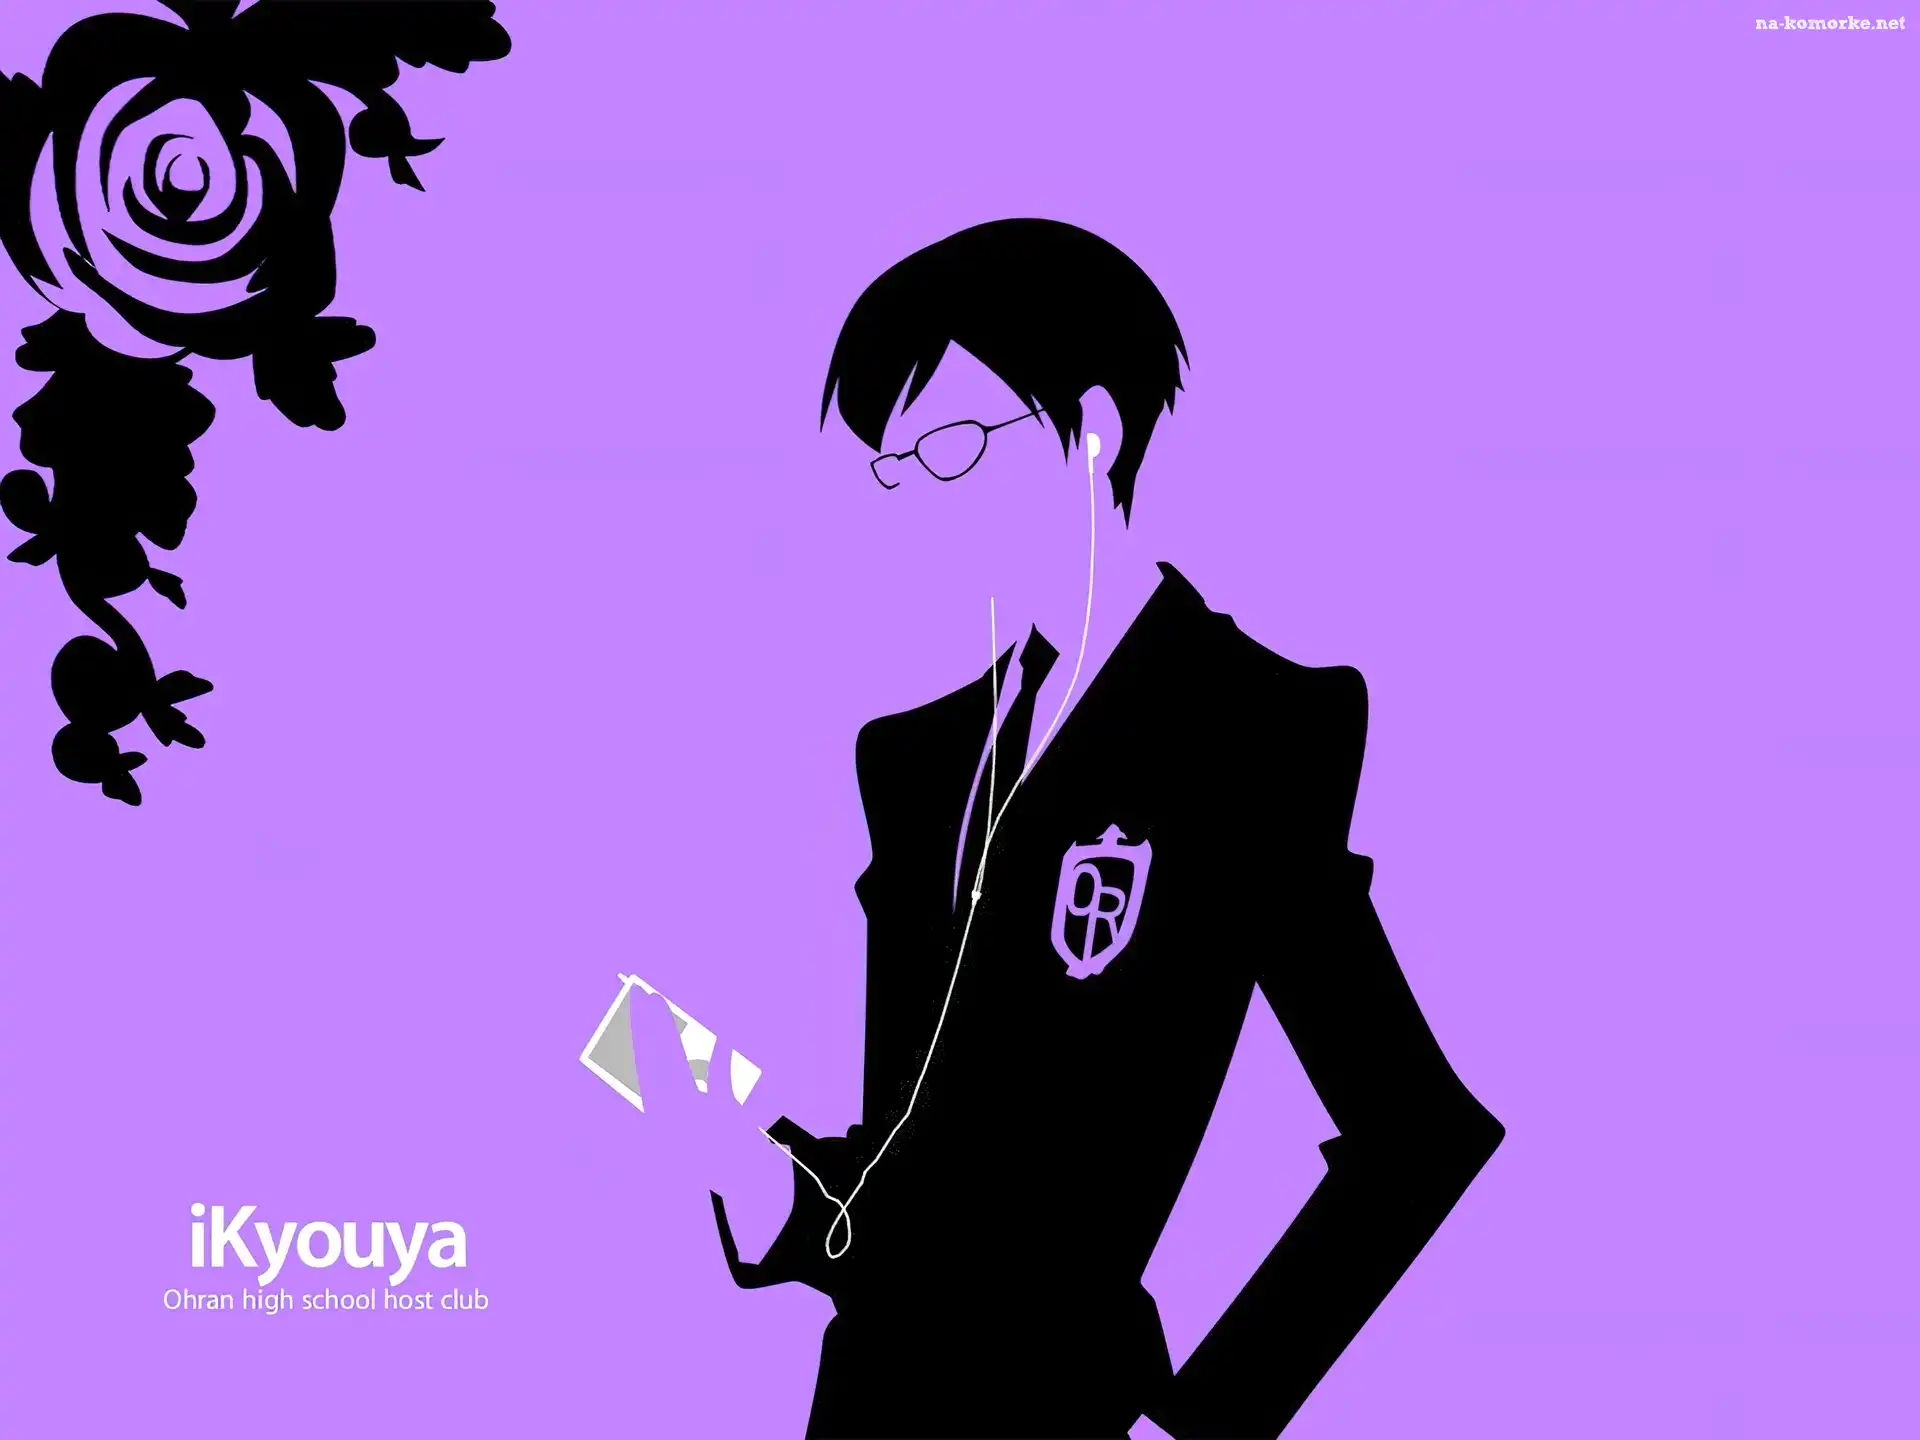 Ouran High School Host Club, ikyouya, ipod